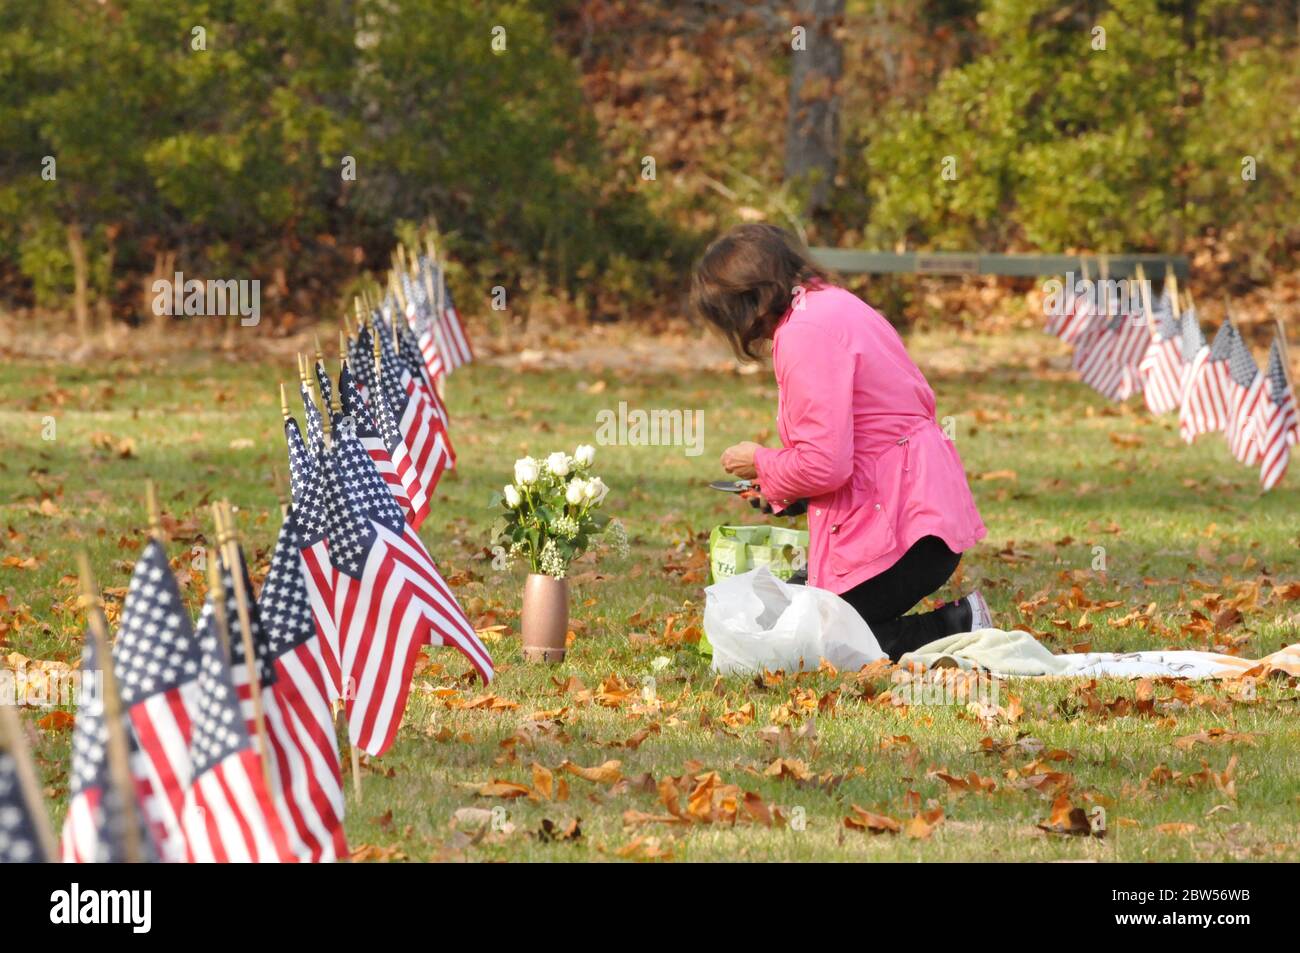 Am Memorial Day legt eine Frau Blumen auf das Grab eines geliebten Menschen mit amerikanischen Fahnen auf alle Gräber. Stockfoto